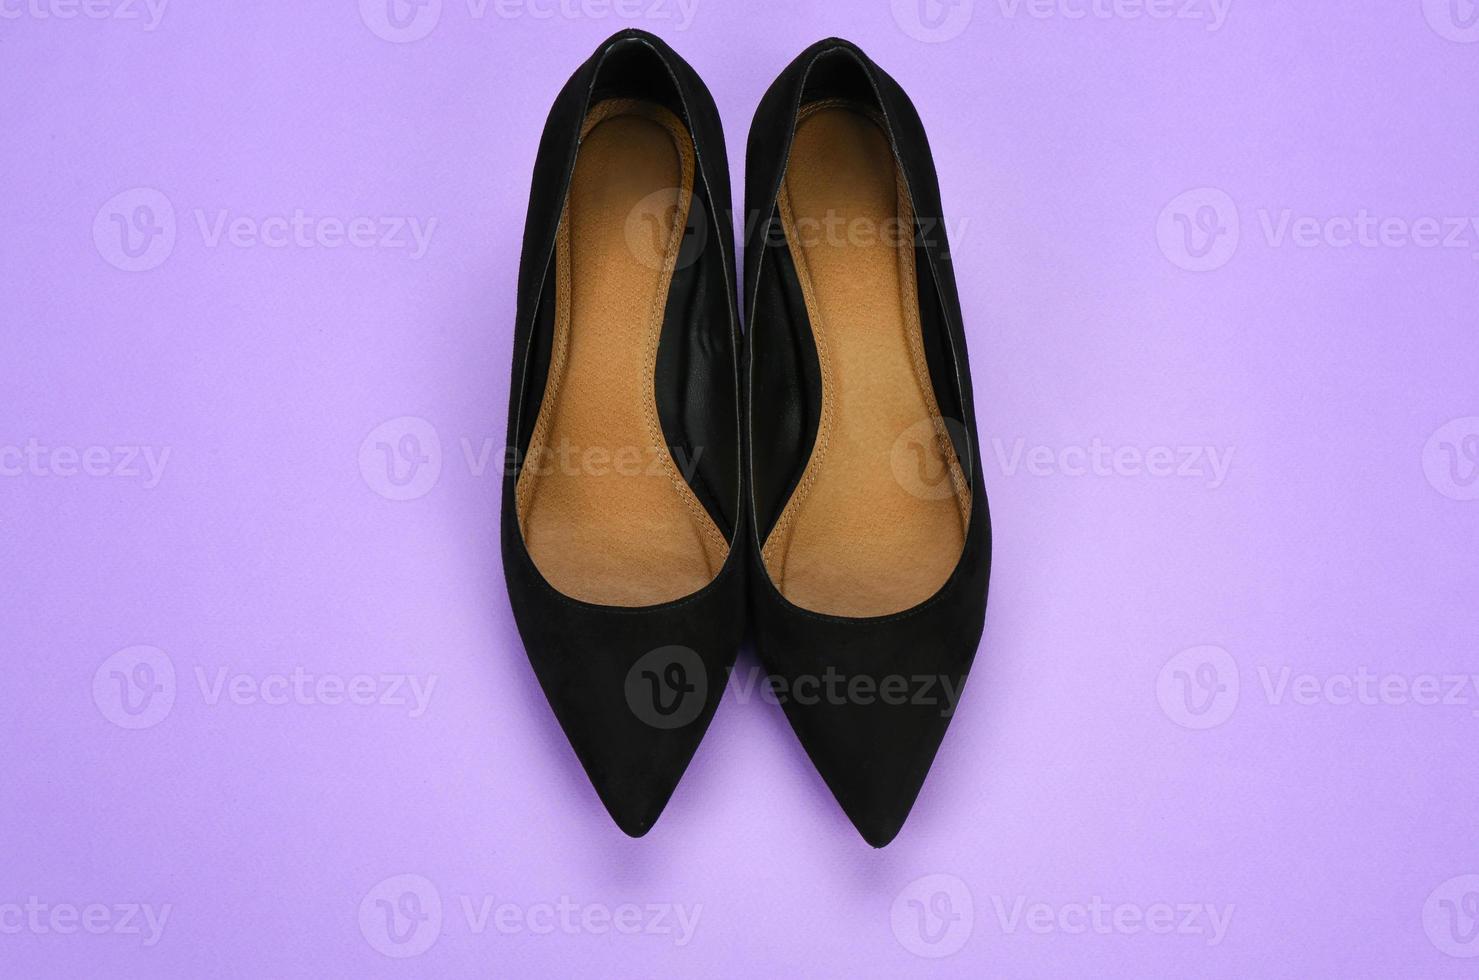 scarpe femminili alla moda su sfondo colorato foto